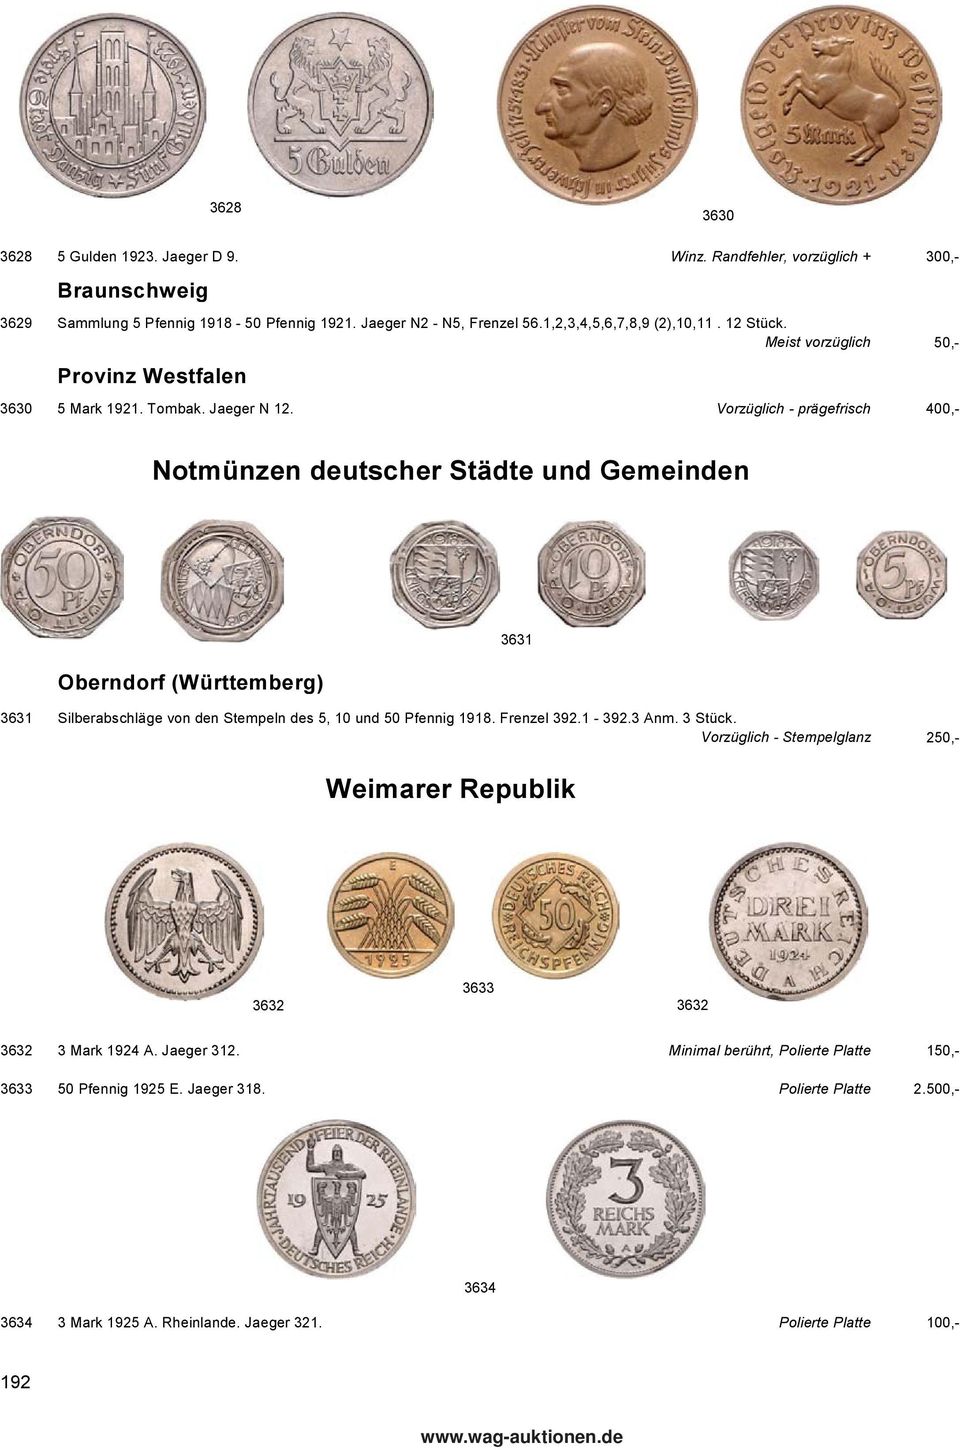 Vorzüglich - prägefrisch 400,- Notmünzen deutscher Städte und Gemeinden Oberndorf (Württemberg) 3631 Silberabschläge von den Stempeln des 5, 10 und 50 Pfennig 1918. Frenzel 392.1-392.3 Anm.